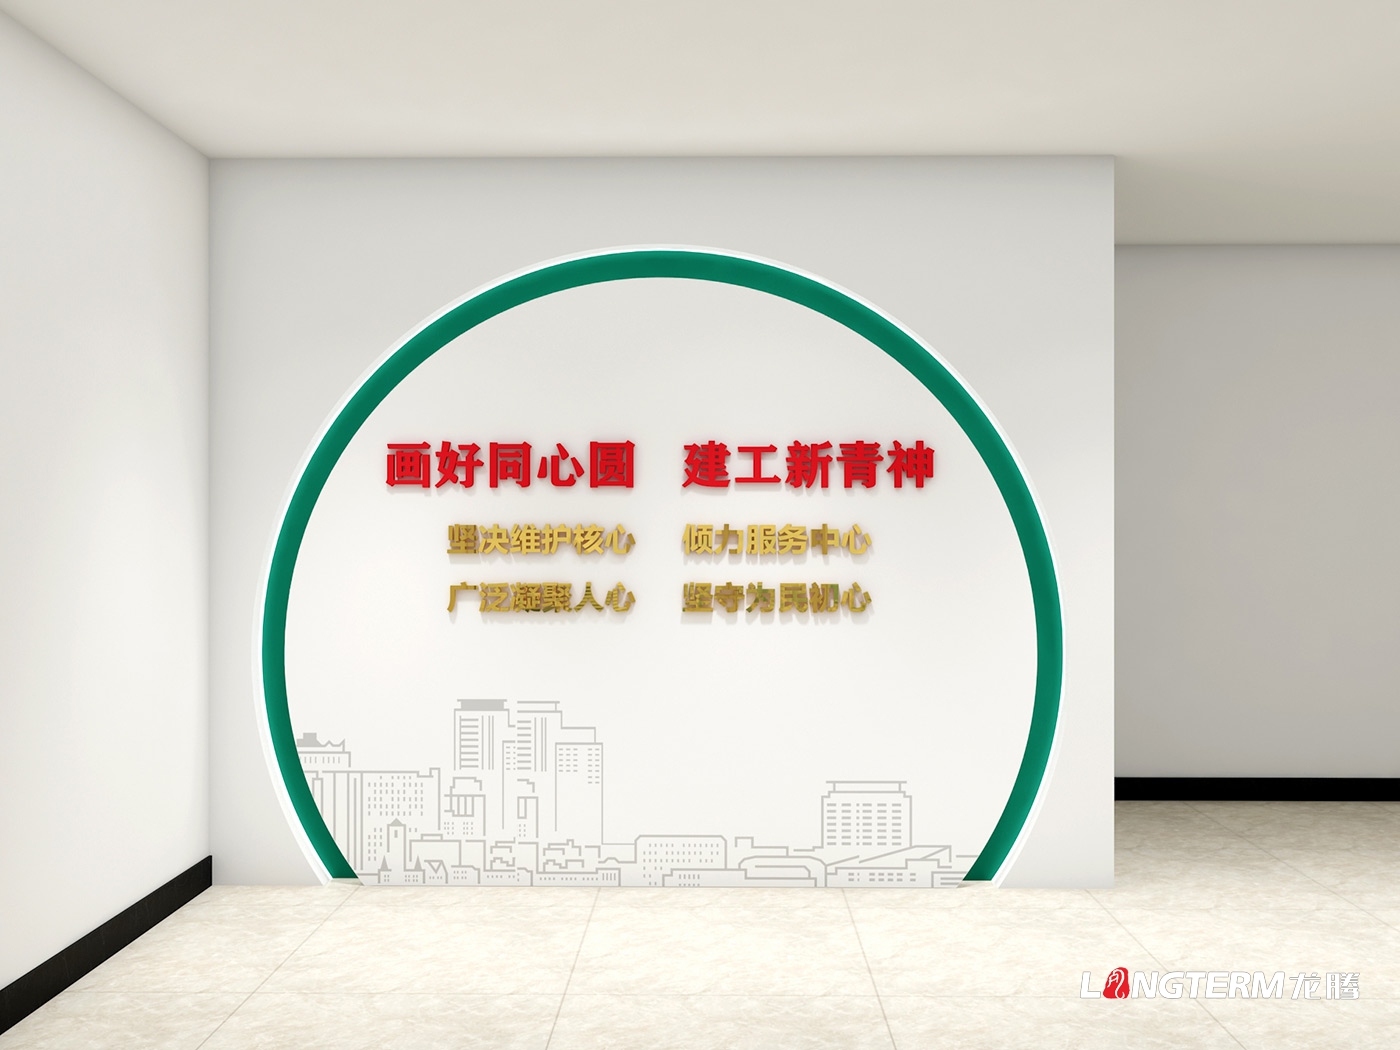 中国政协光辉发展历程文化墙内容梳理及设计效果图